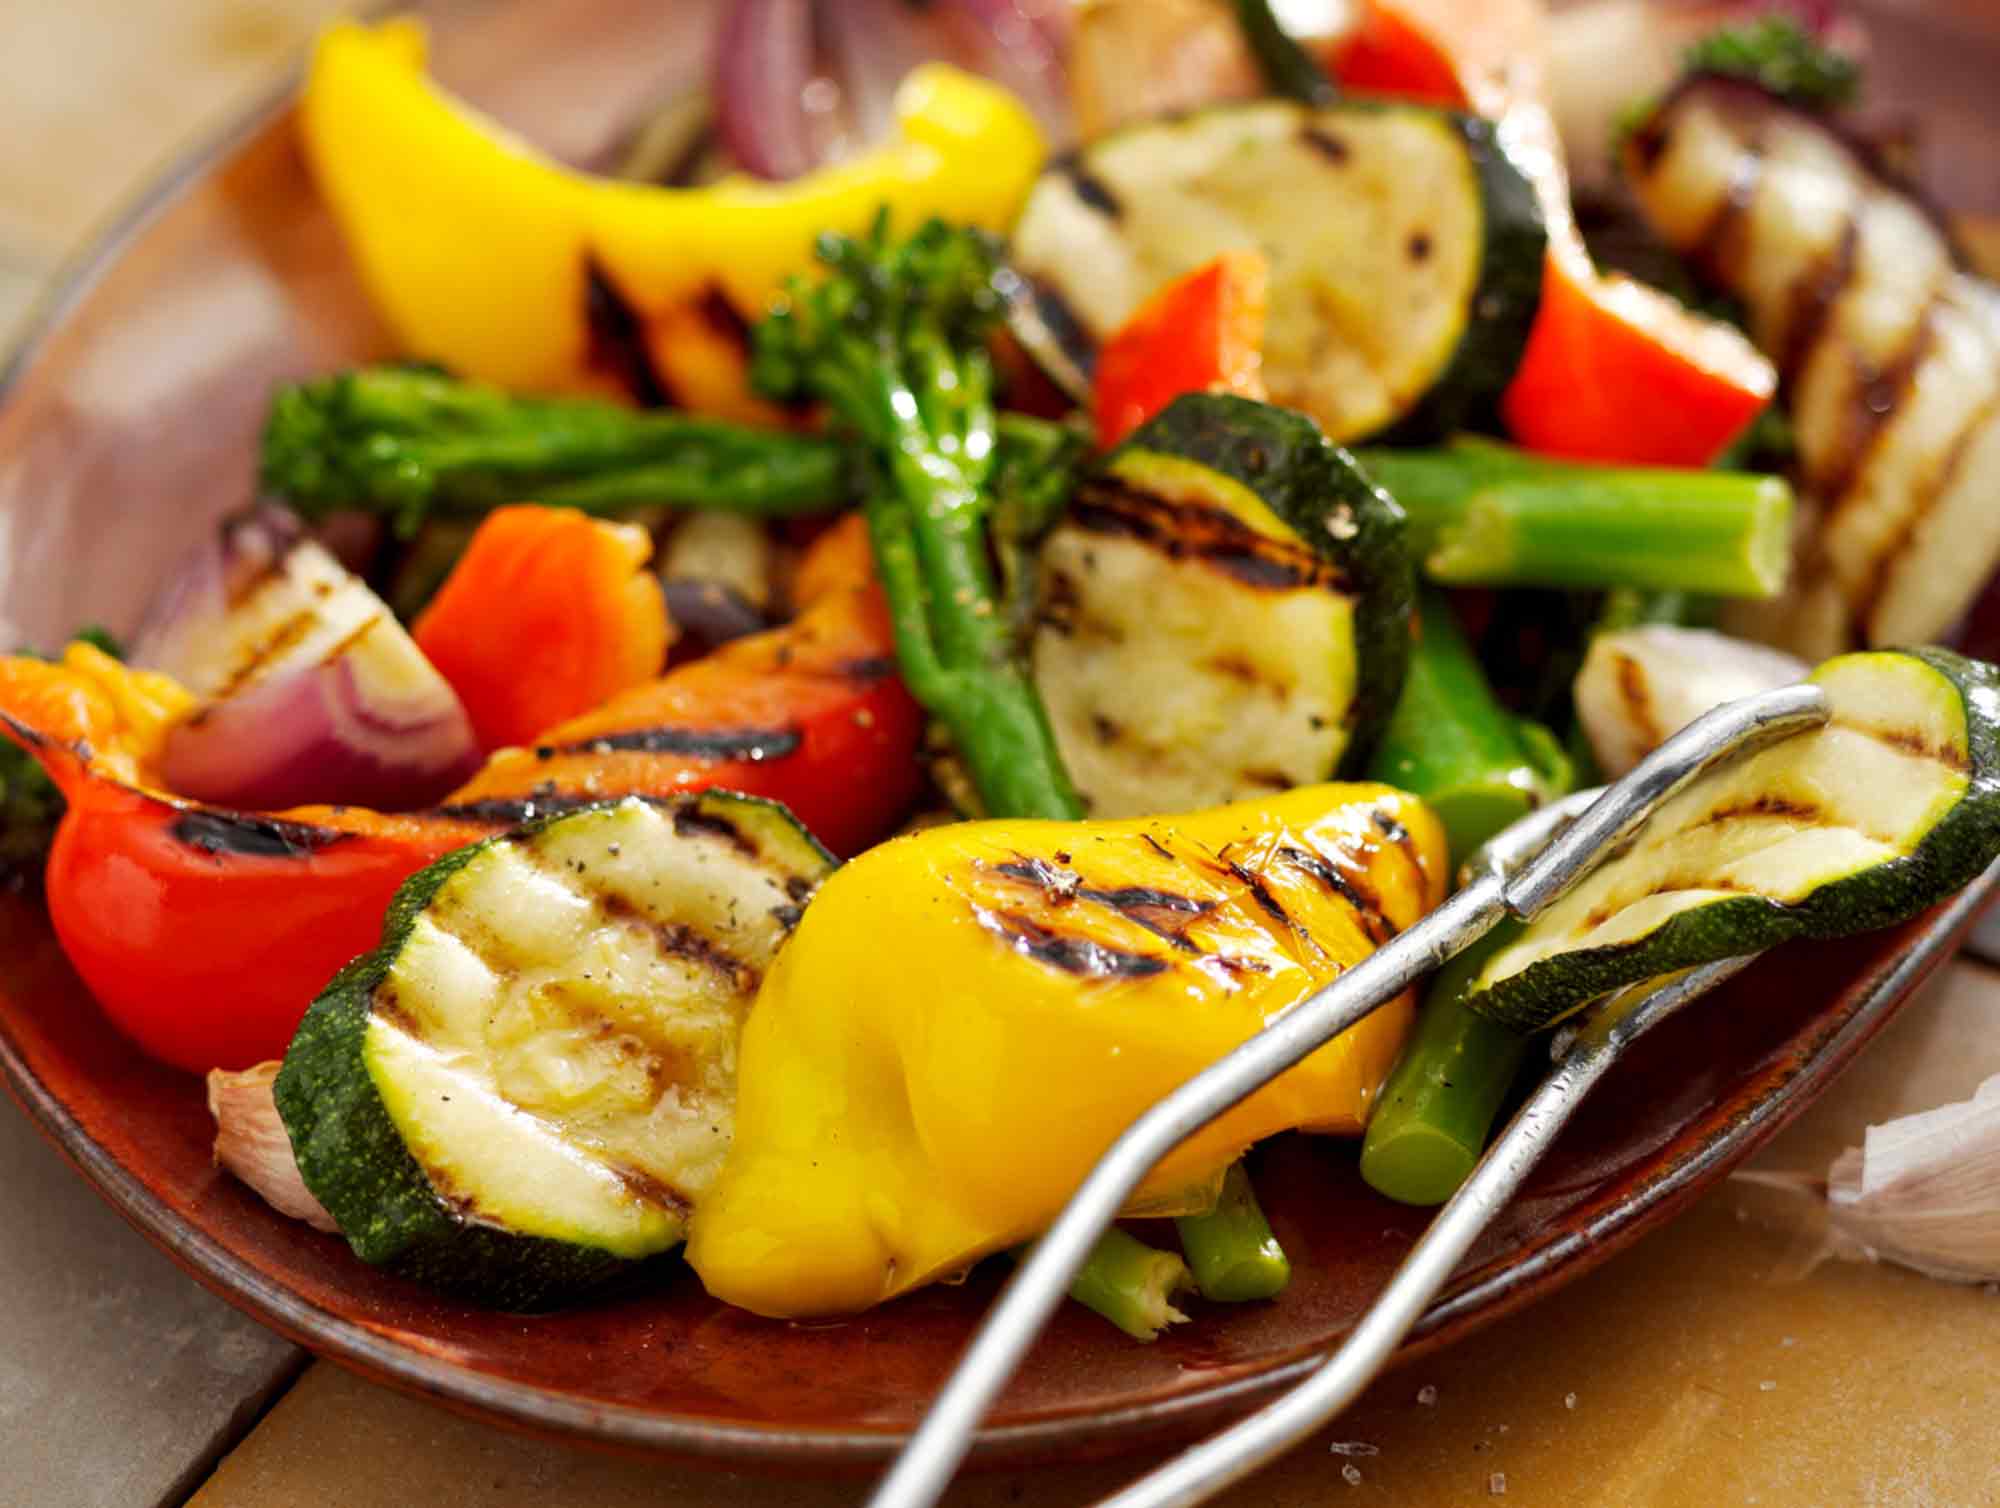 Slik bevarer du næringsstoffer: Dampe grønnsaker